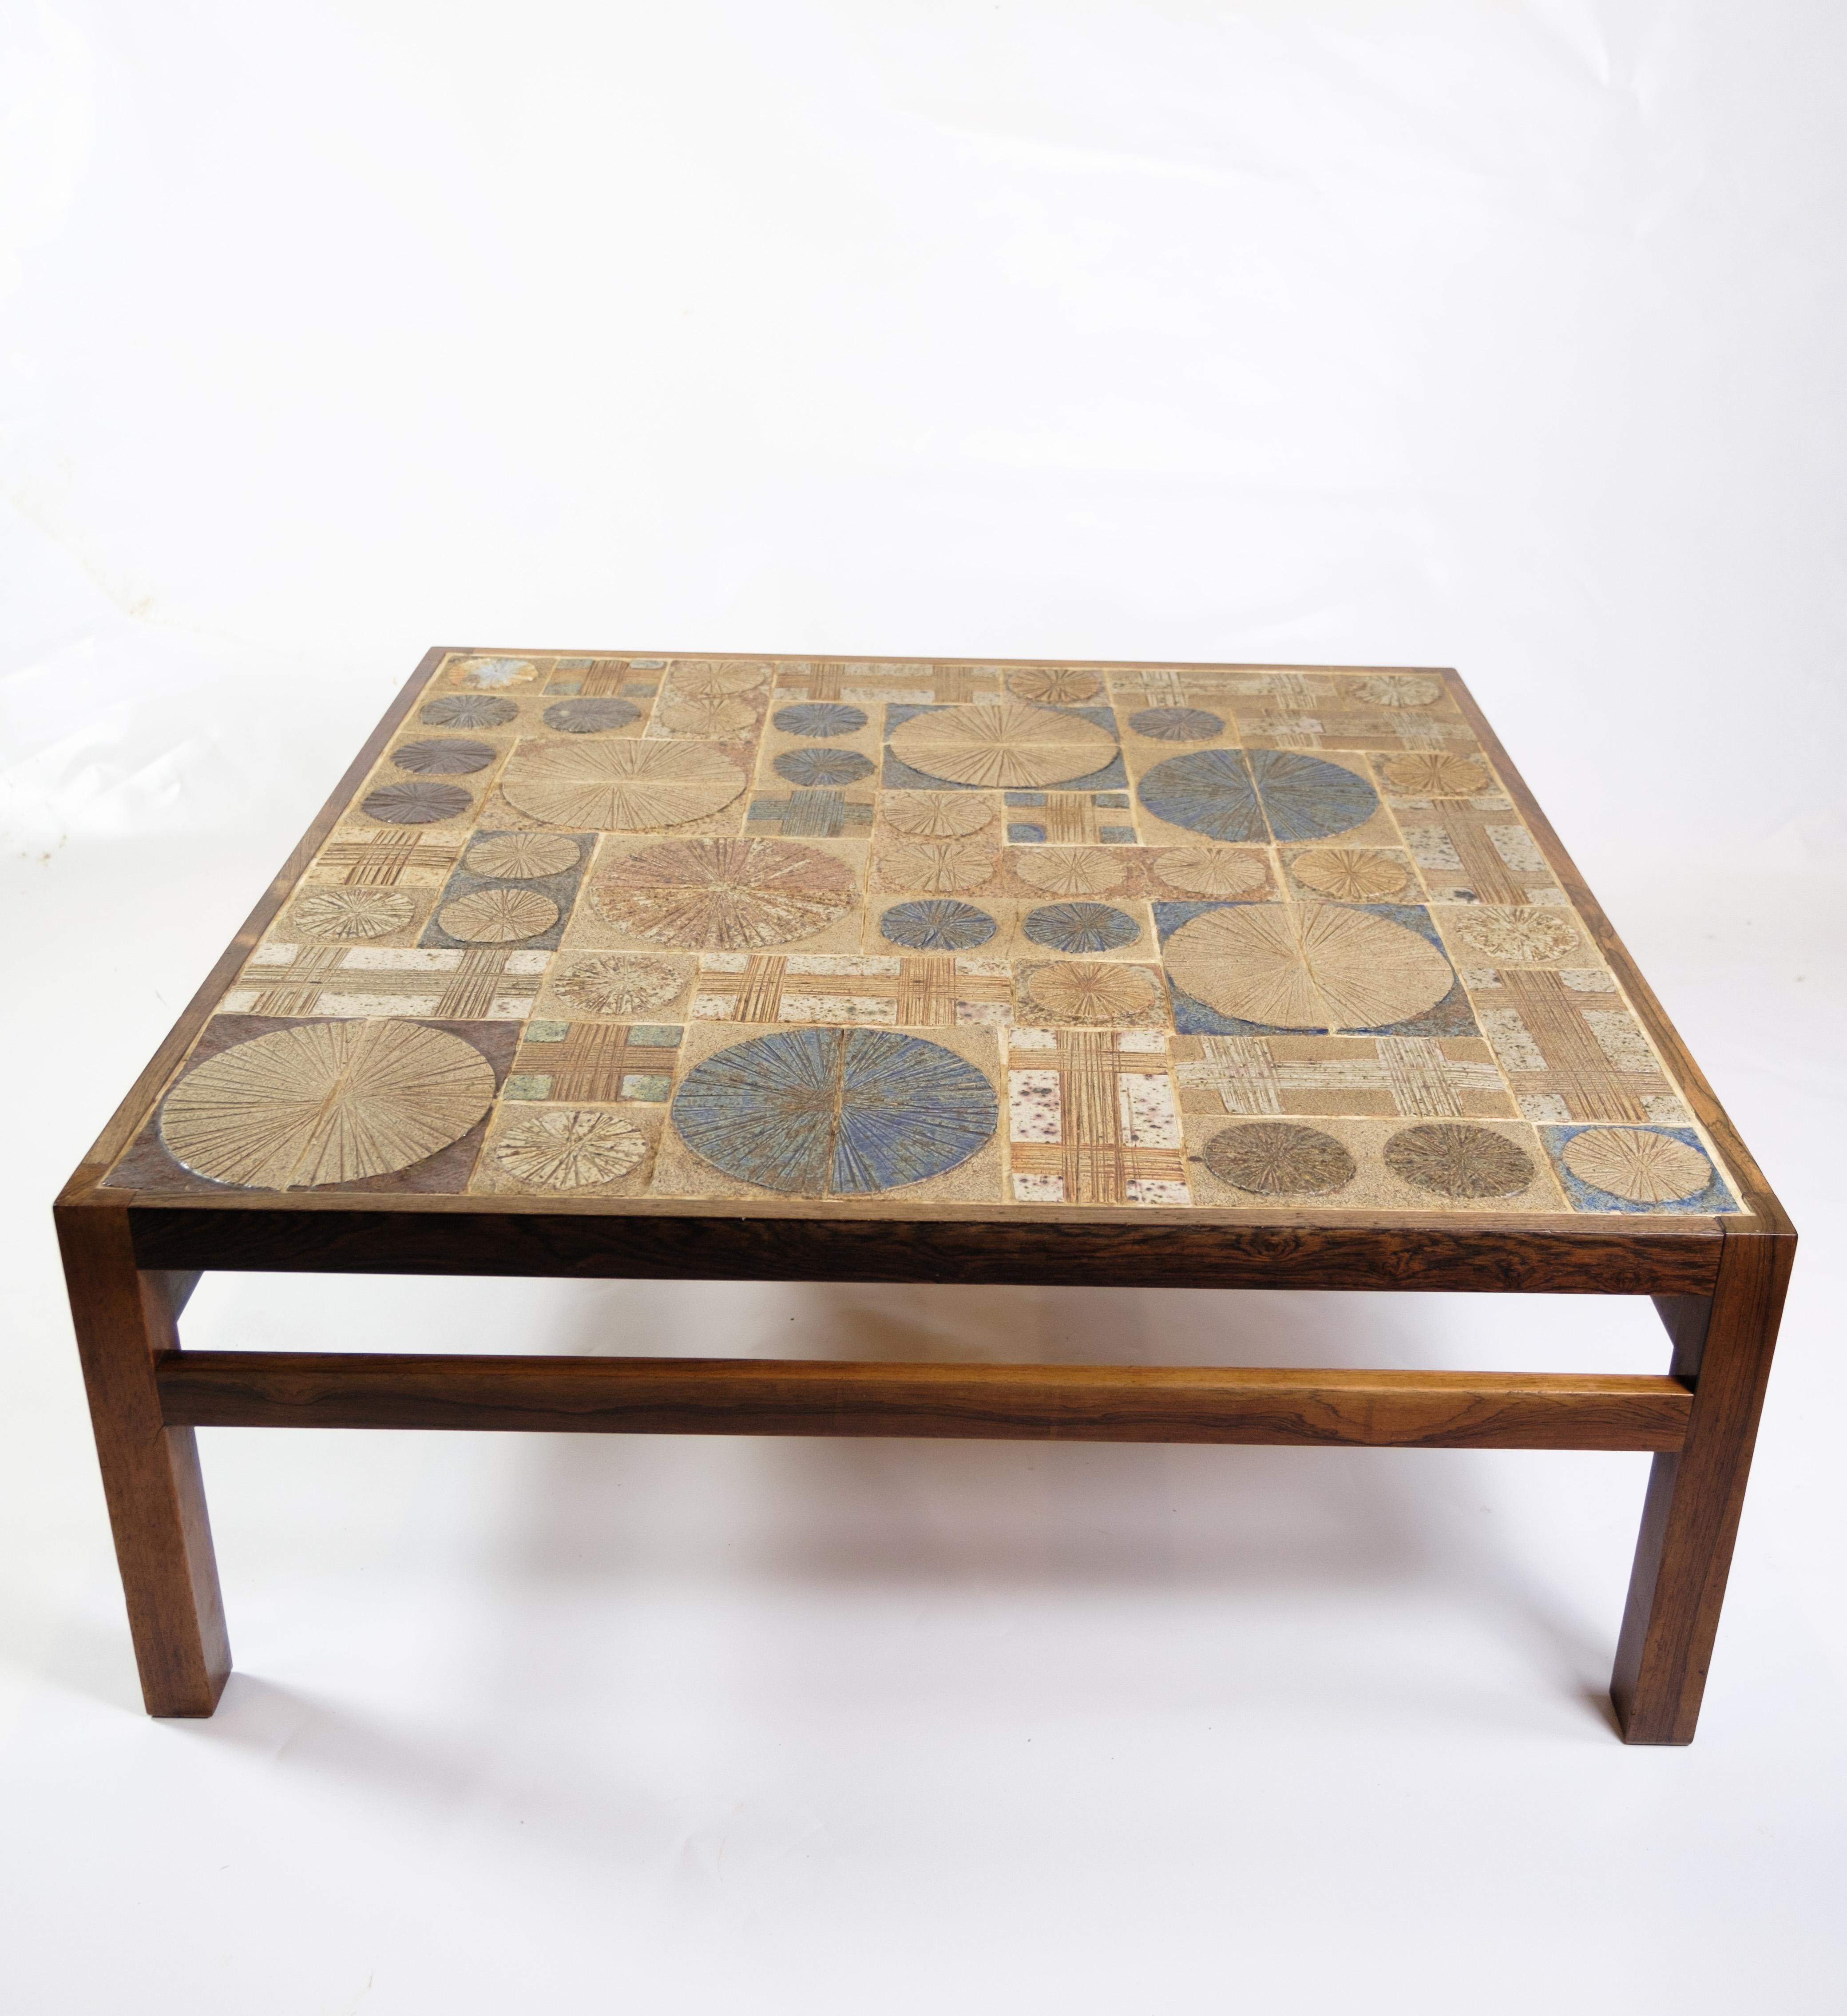 La table basse, faite de bois de rose et de céramique, est une pièce unique conçue par Tue Poulsen et produite par Haslev Møbelsnedkeri en 1960. Cette table basse se distingue par sa combinaison de matériaux et de détails artisanaux qui reflètent le